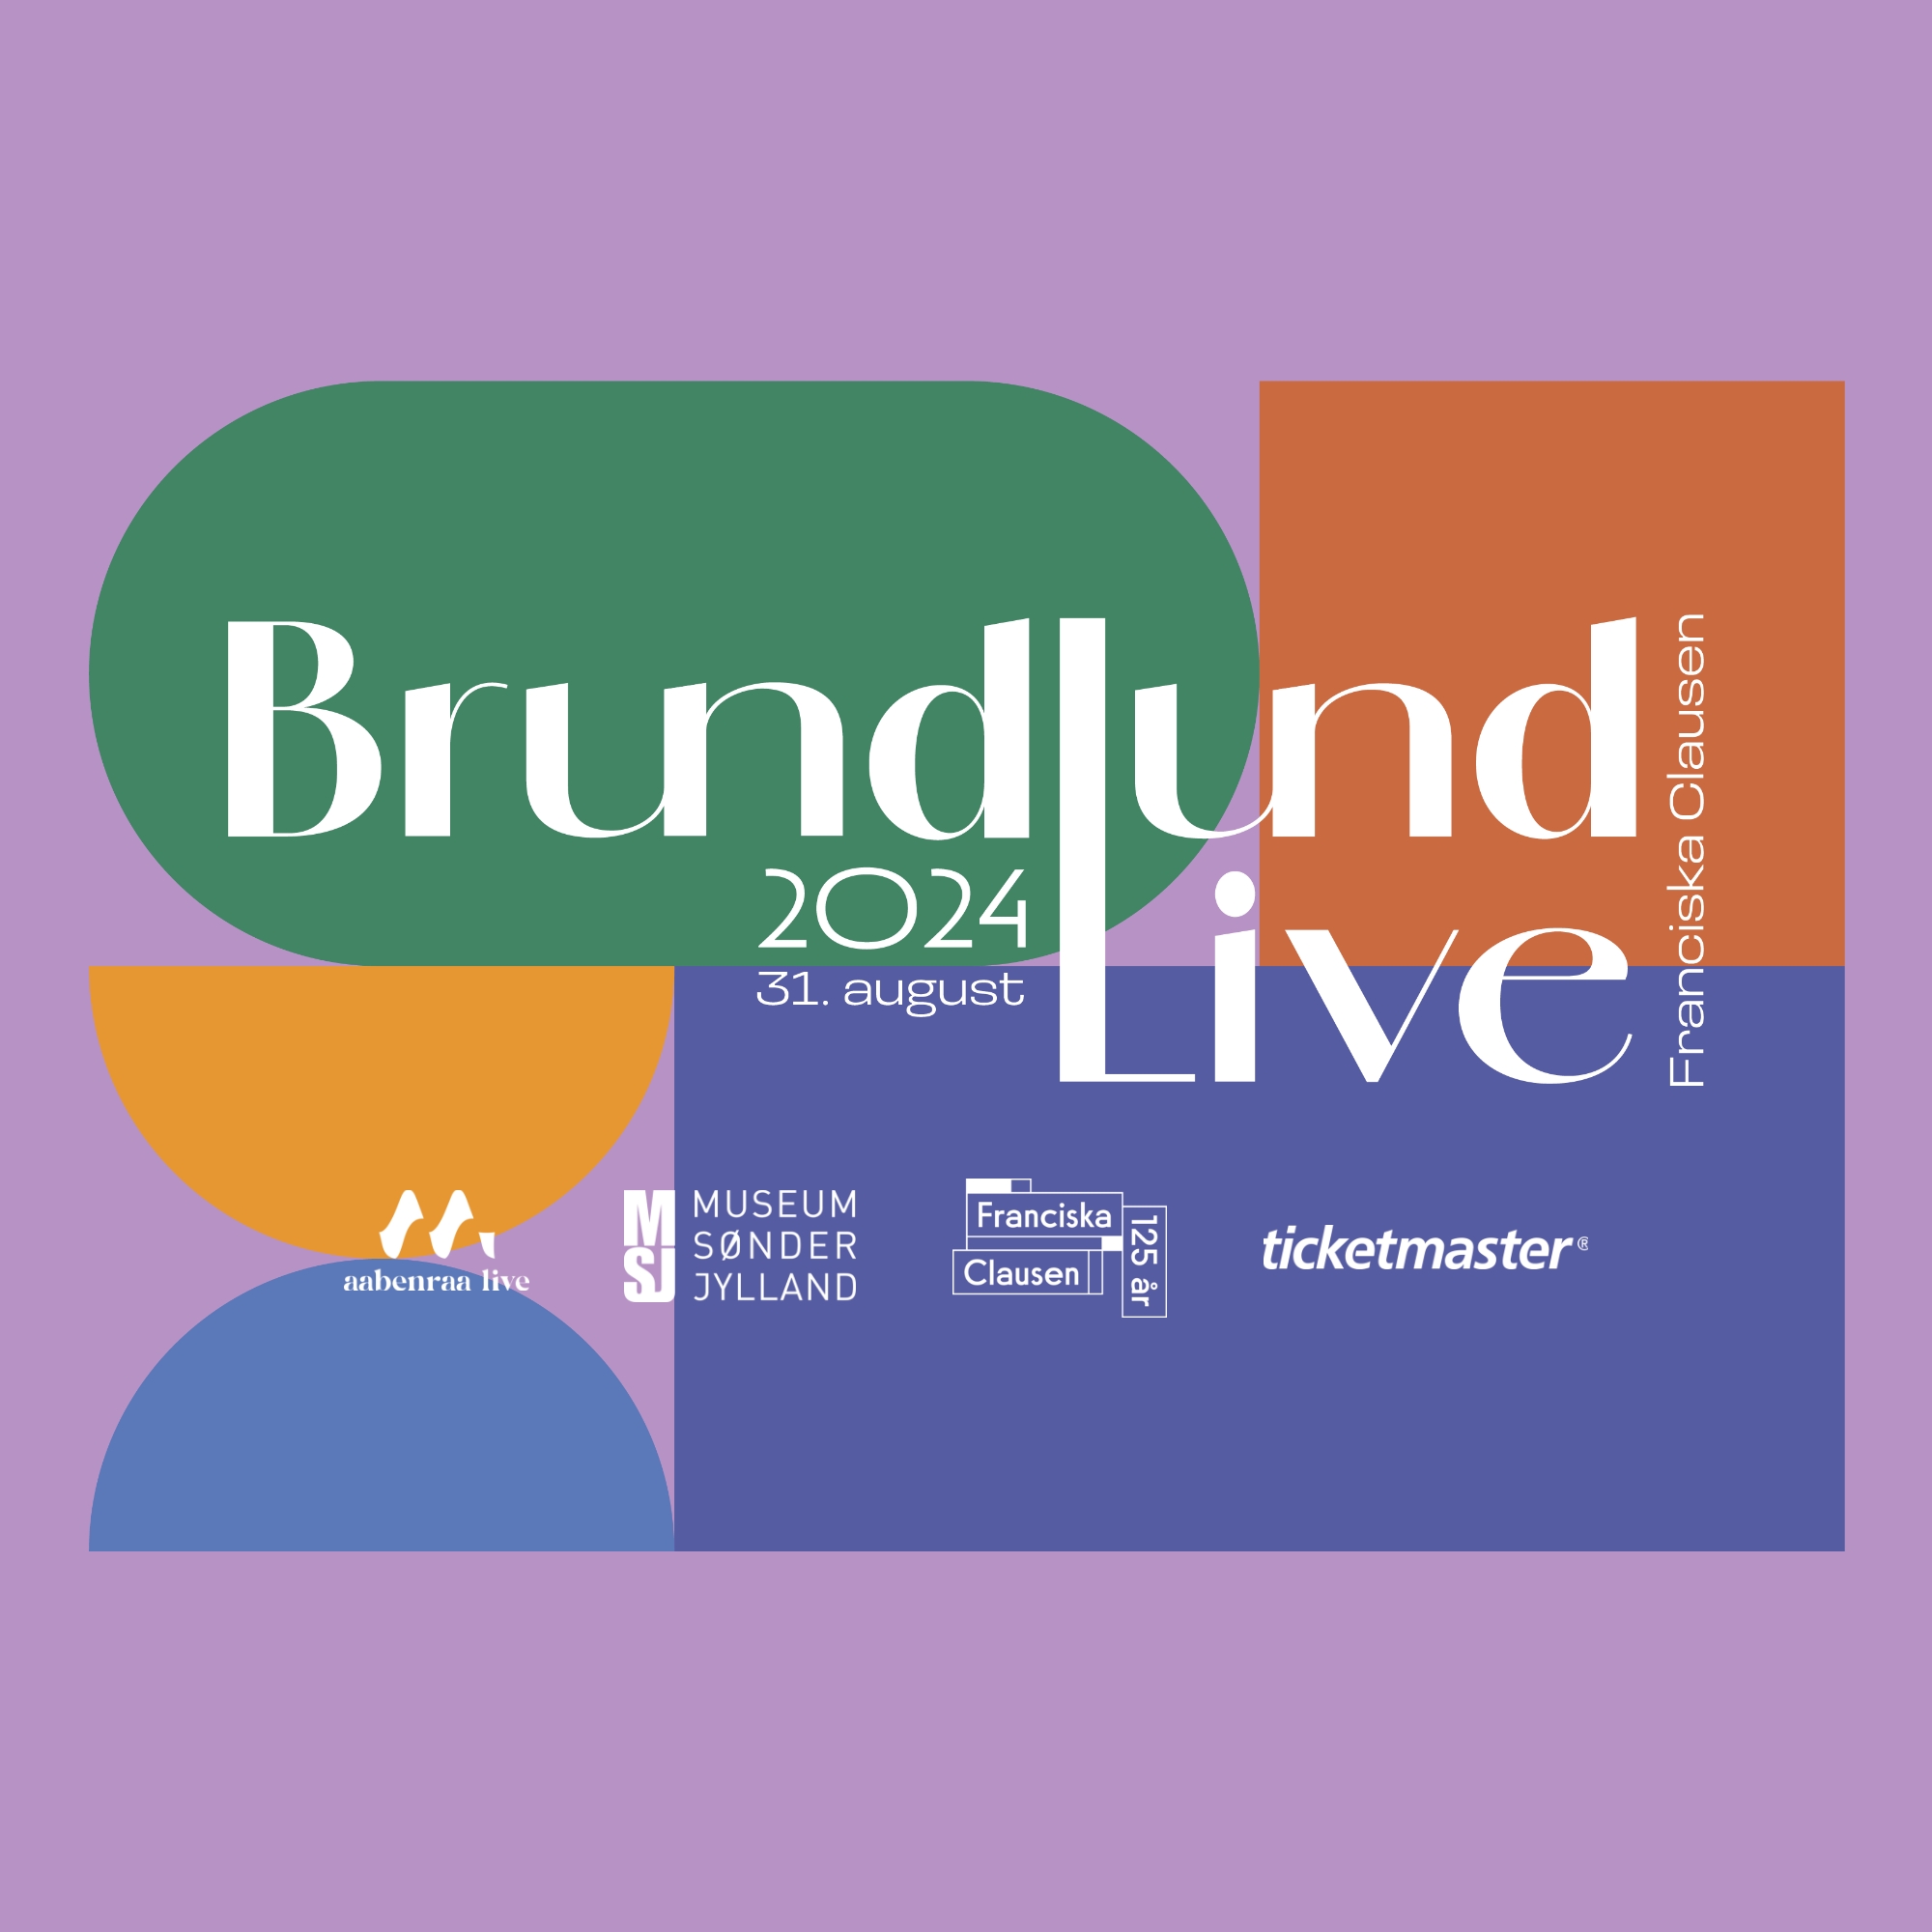 Brundlund Live